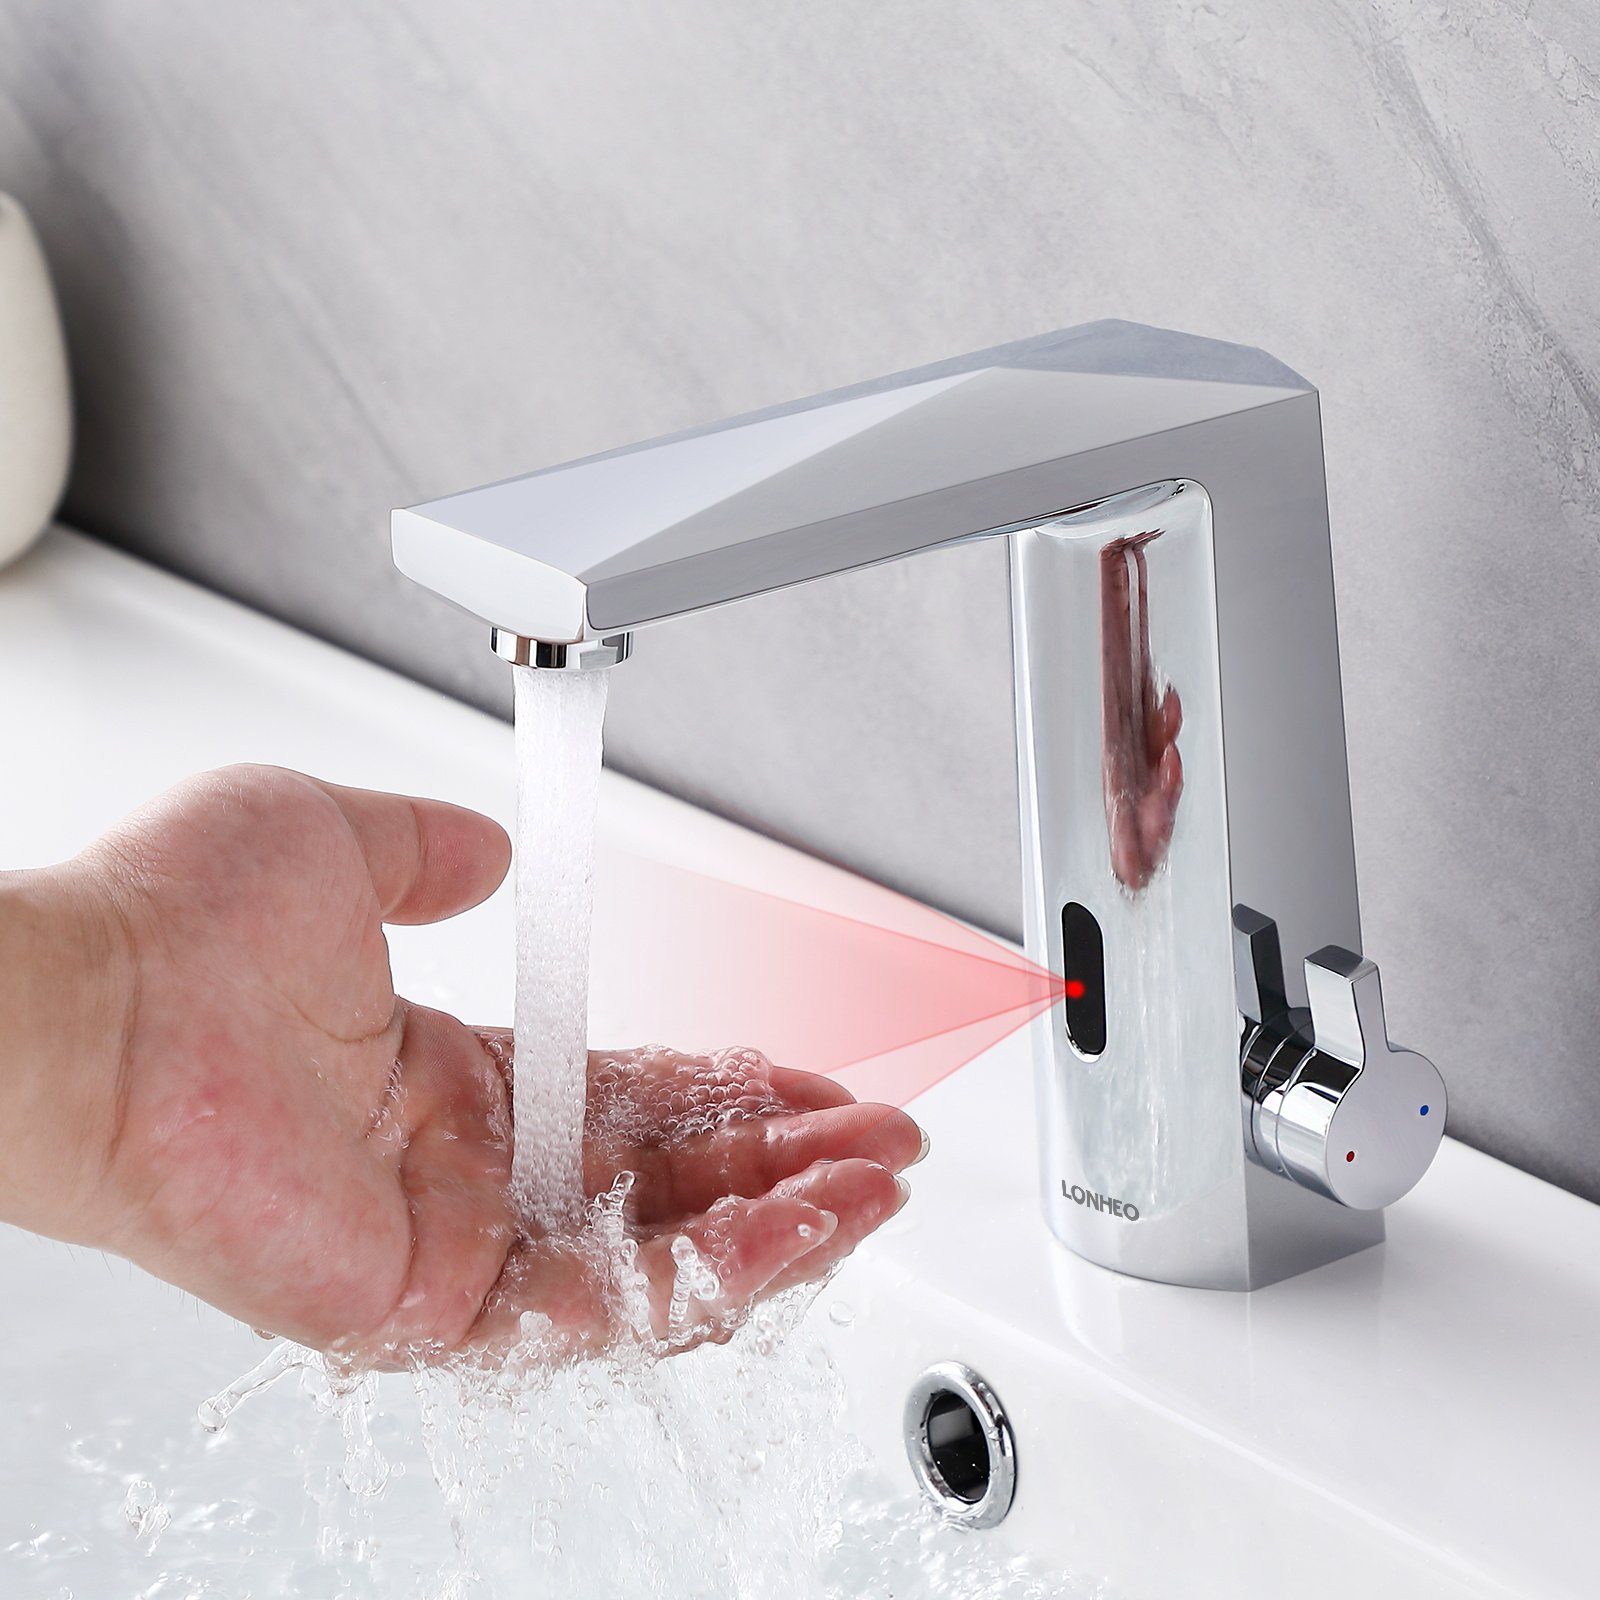 Auralum Waschtischarmatur Lonheo Infrarot Sensor Wasserhahn Bad Armatur, Automatisch Induktion Chrom